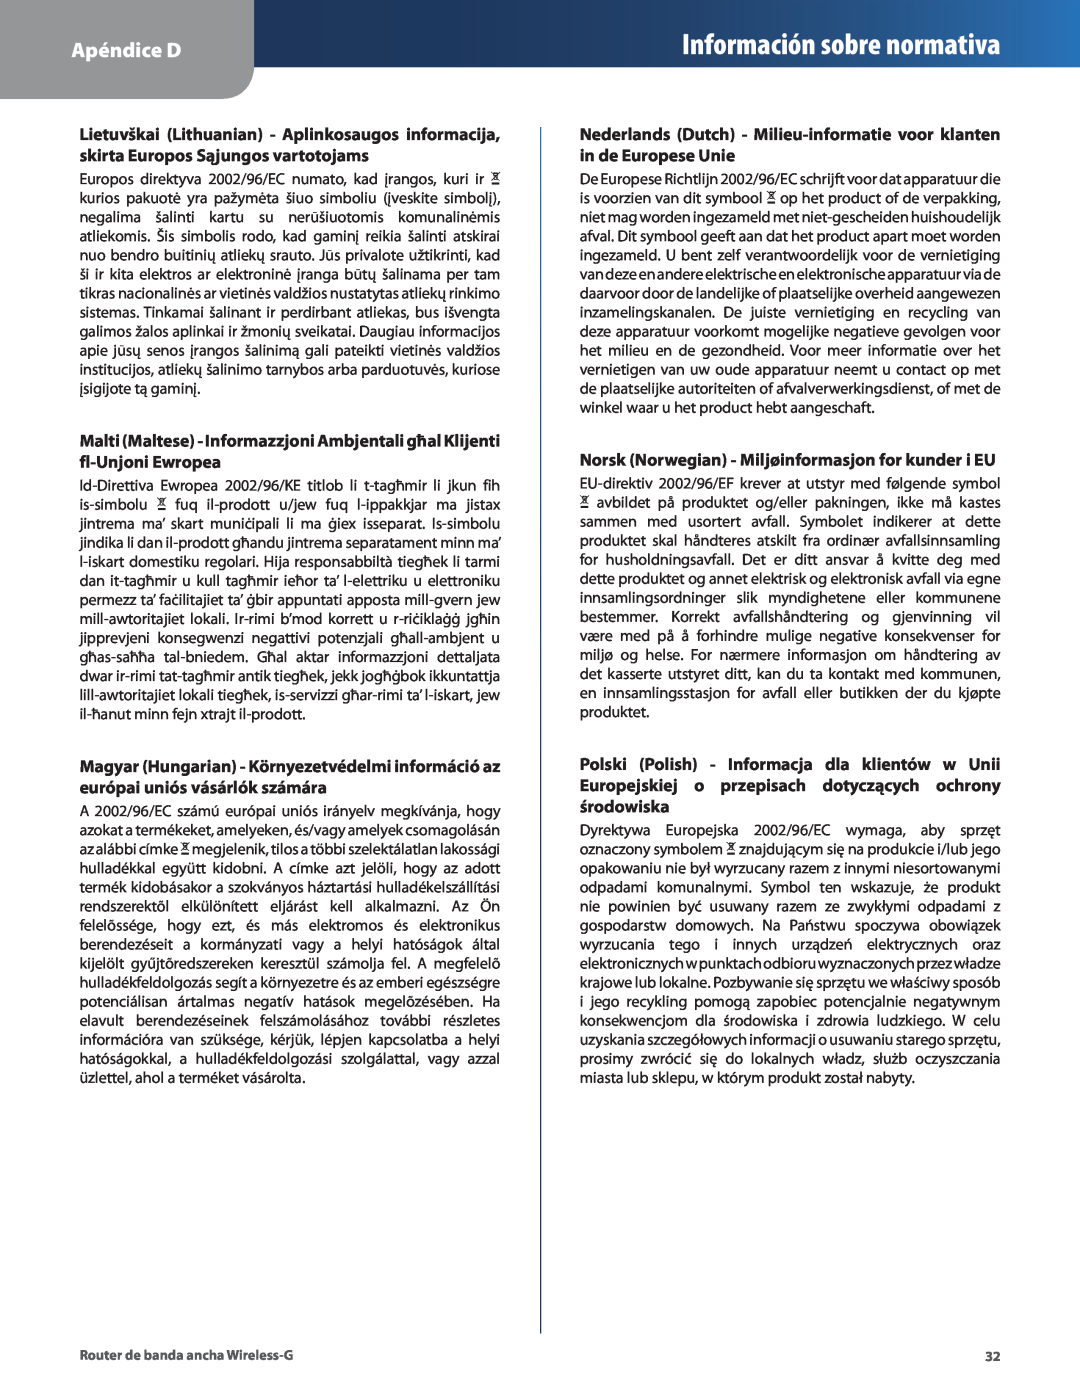 Cisco Systems WRT54G2 manual Información sobre normativa, Apéndice D 